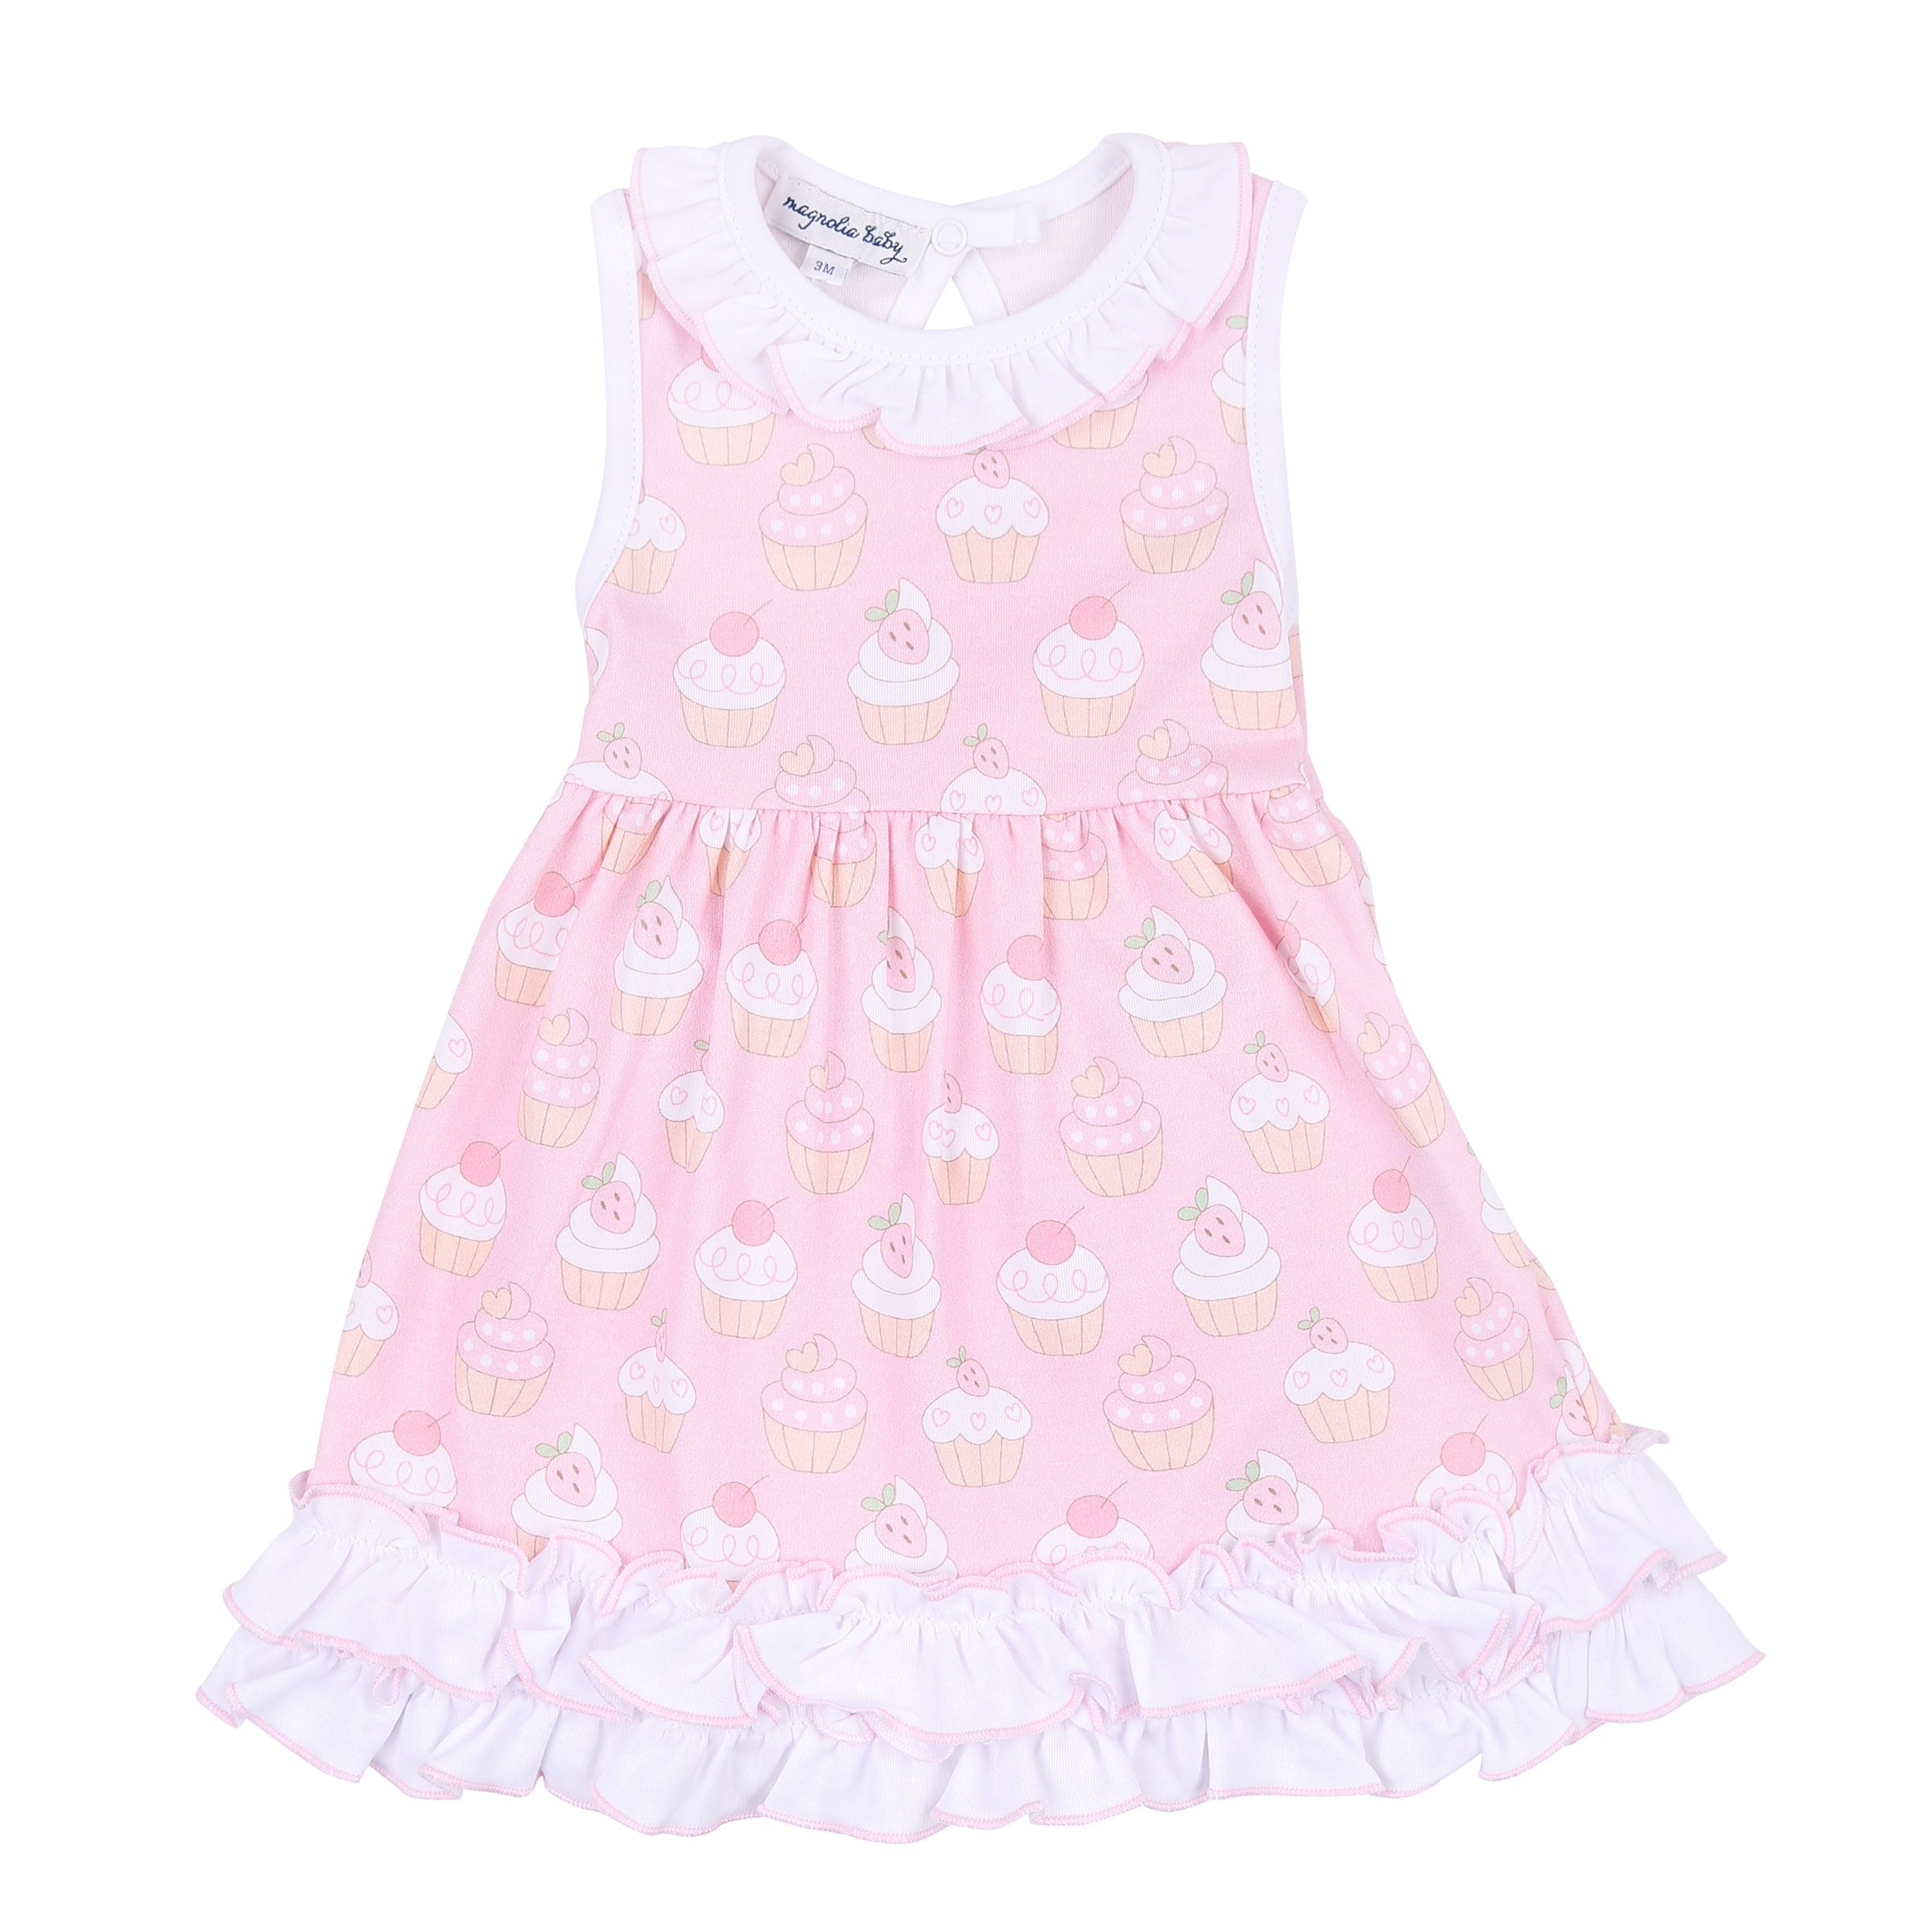 Cupcake Cutie Toddler Dress